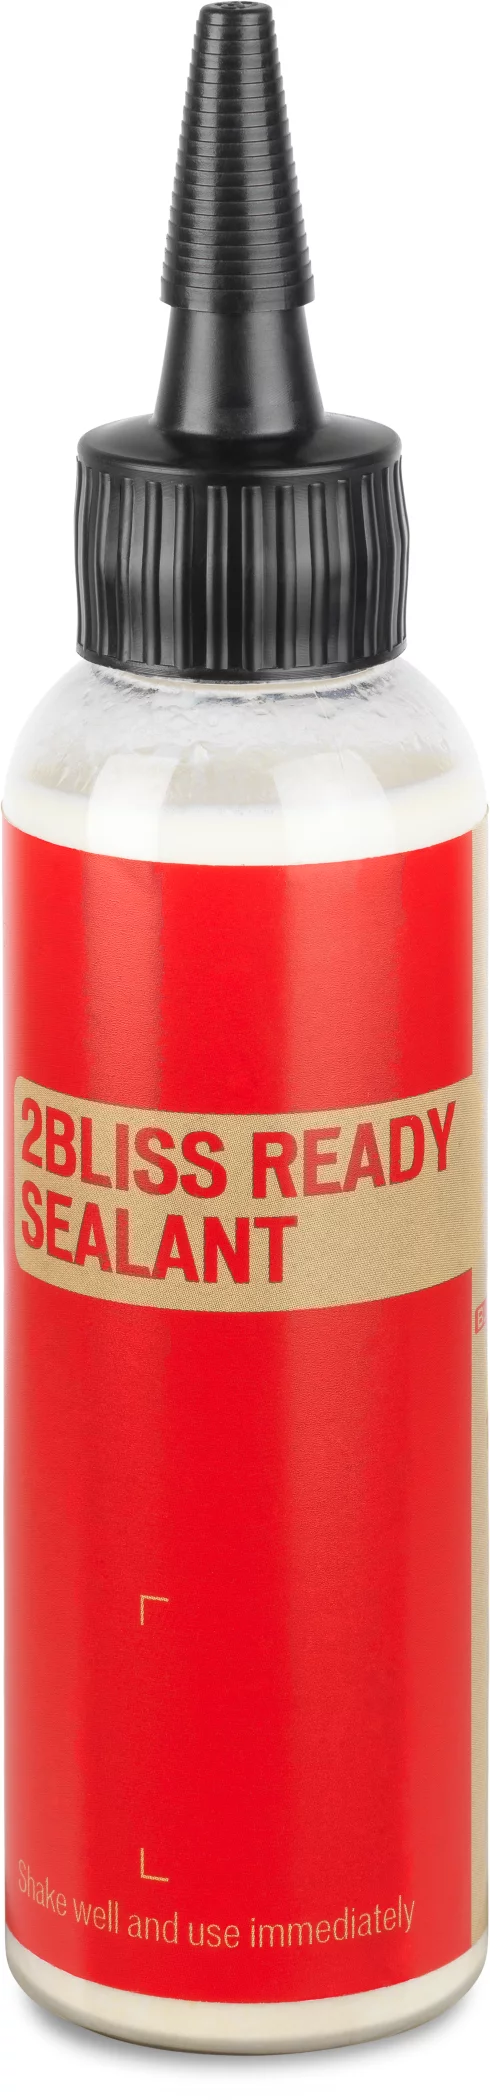 2Bliss_Ready_Tire_Sealant